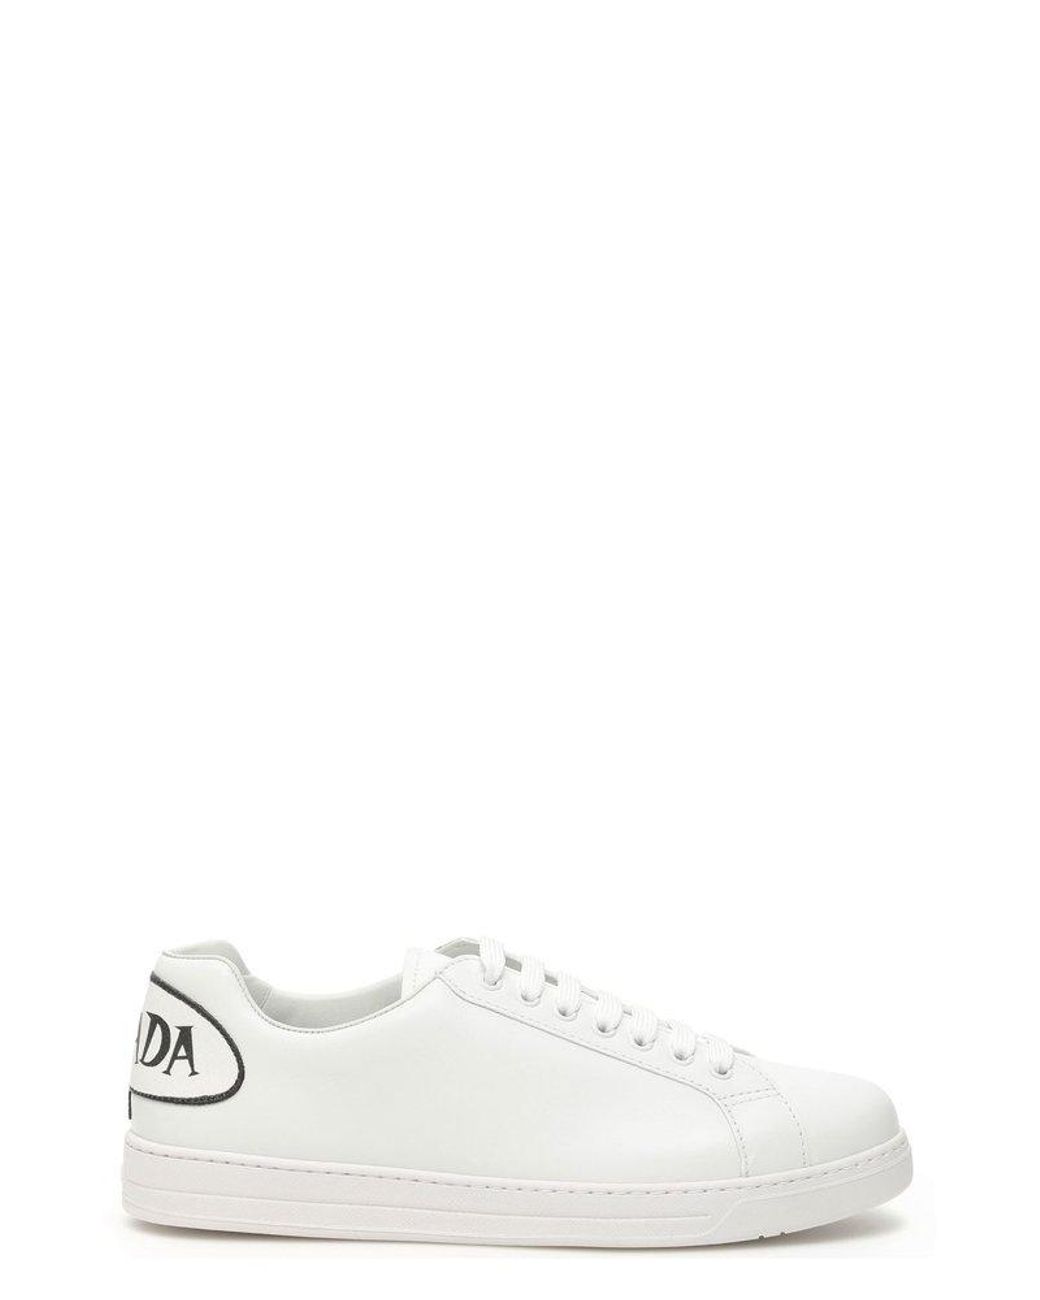 Prada Comic Logo Low Top Sneakers in White | Lyst